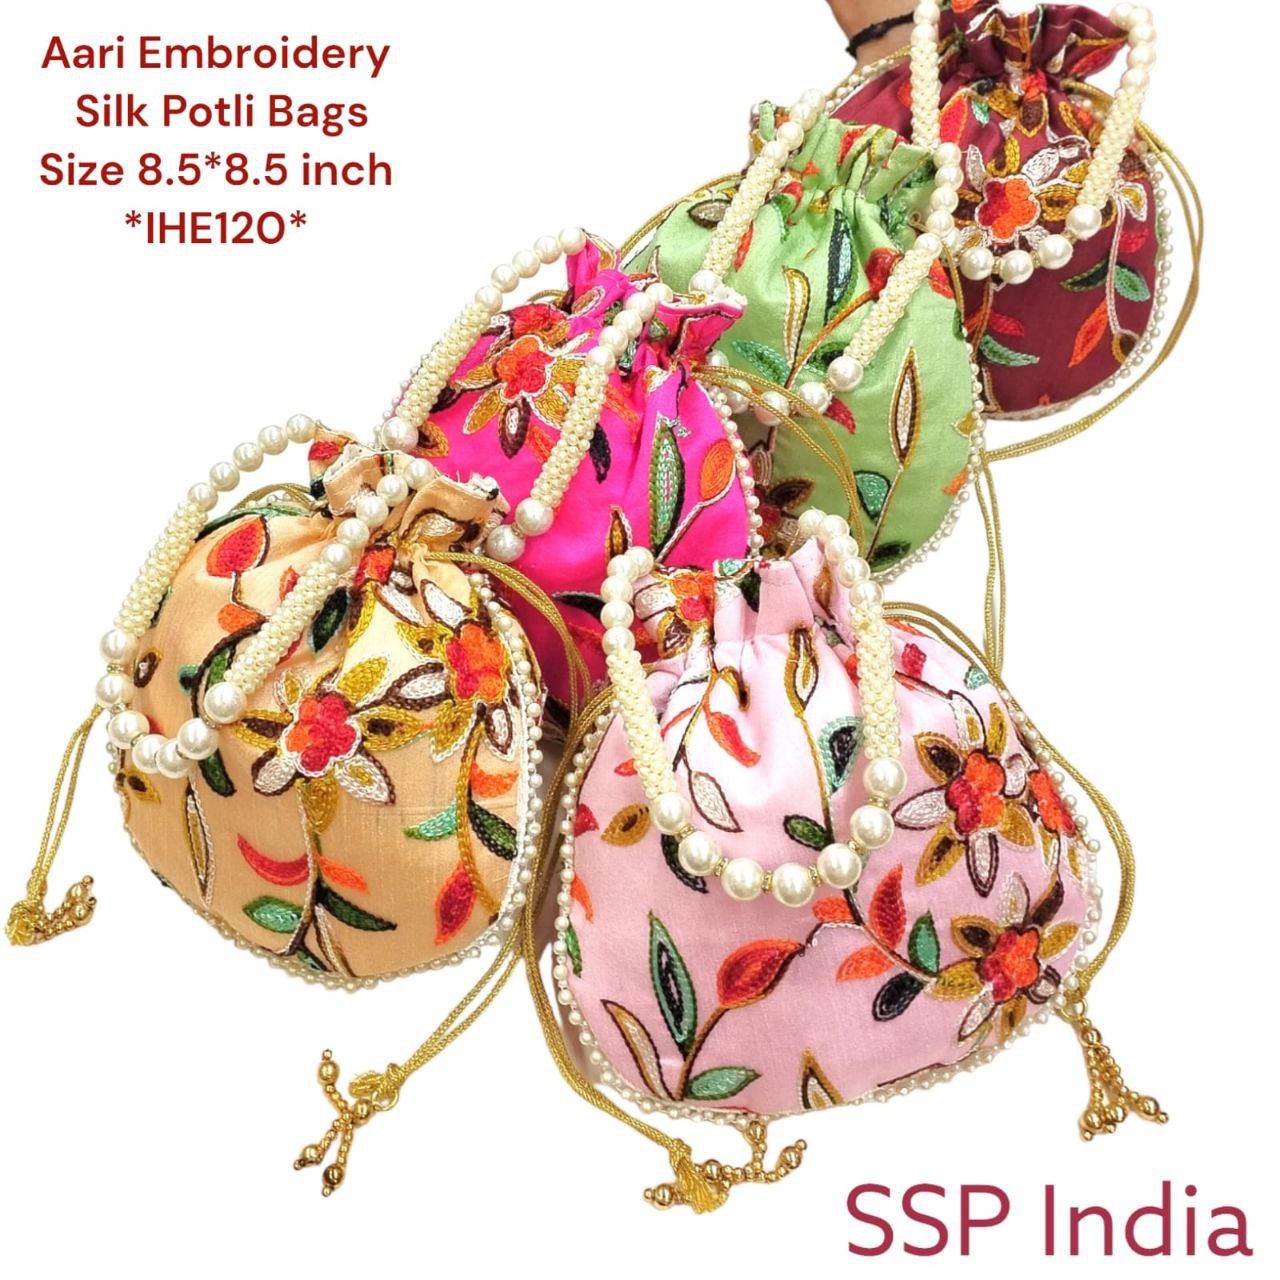 Woollen Aari Embroidery Potli Bags(24 Pcs) Or Ssp Return Gifts